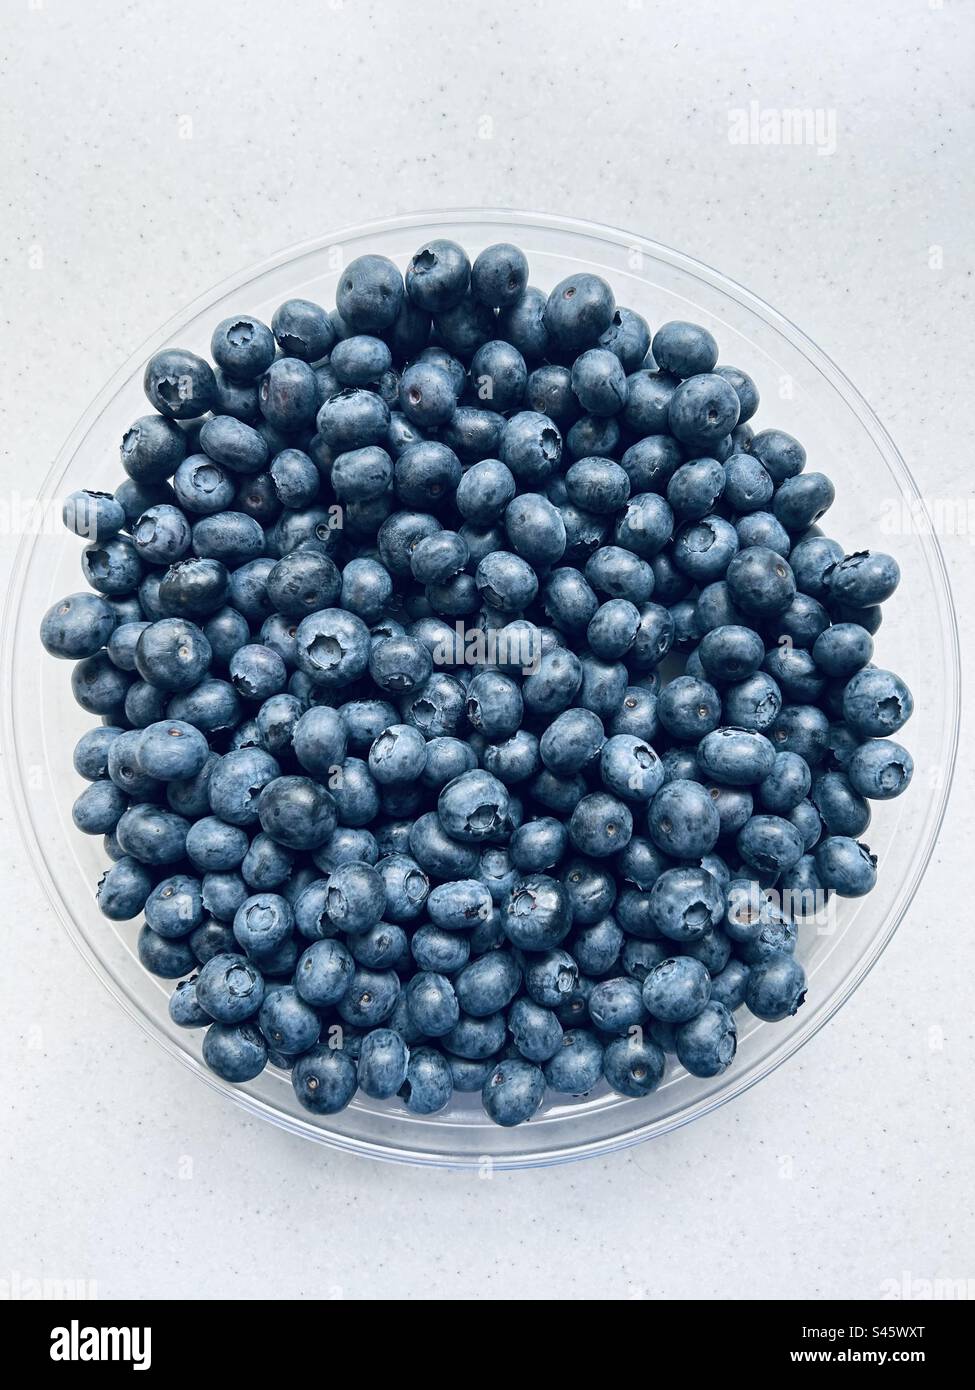 Dish of fresh blueberries. Stock Photo